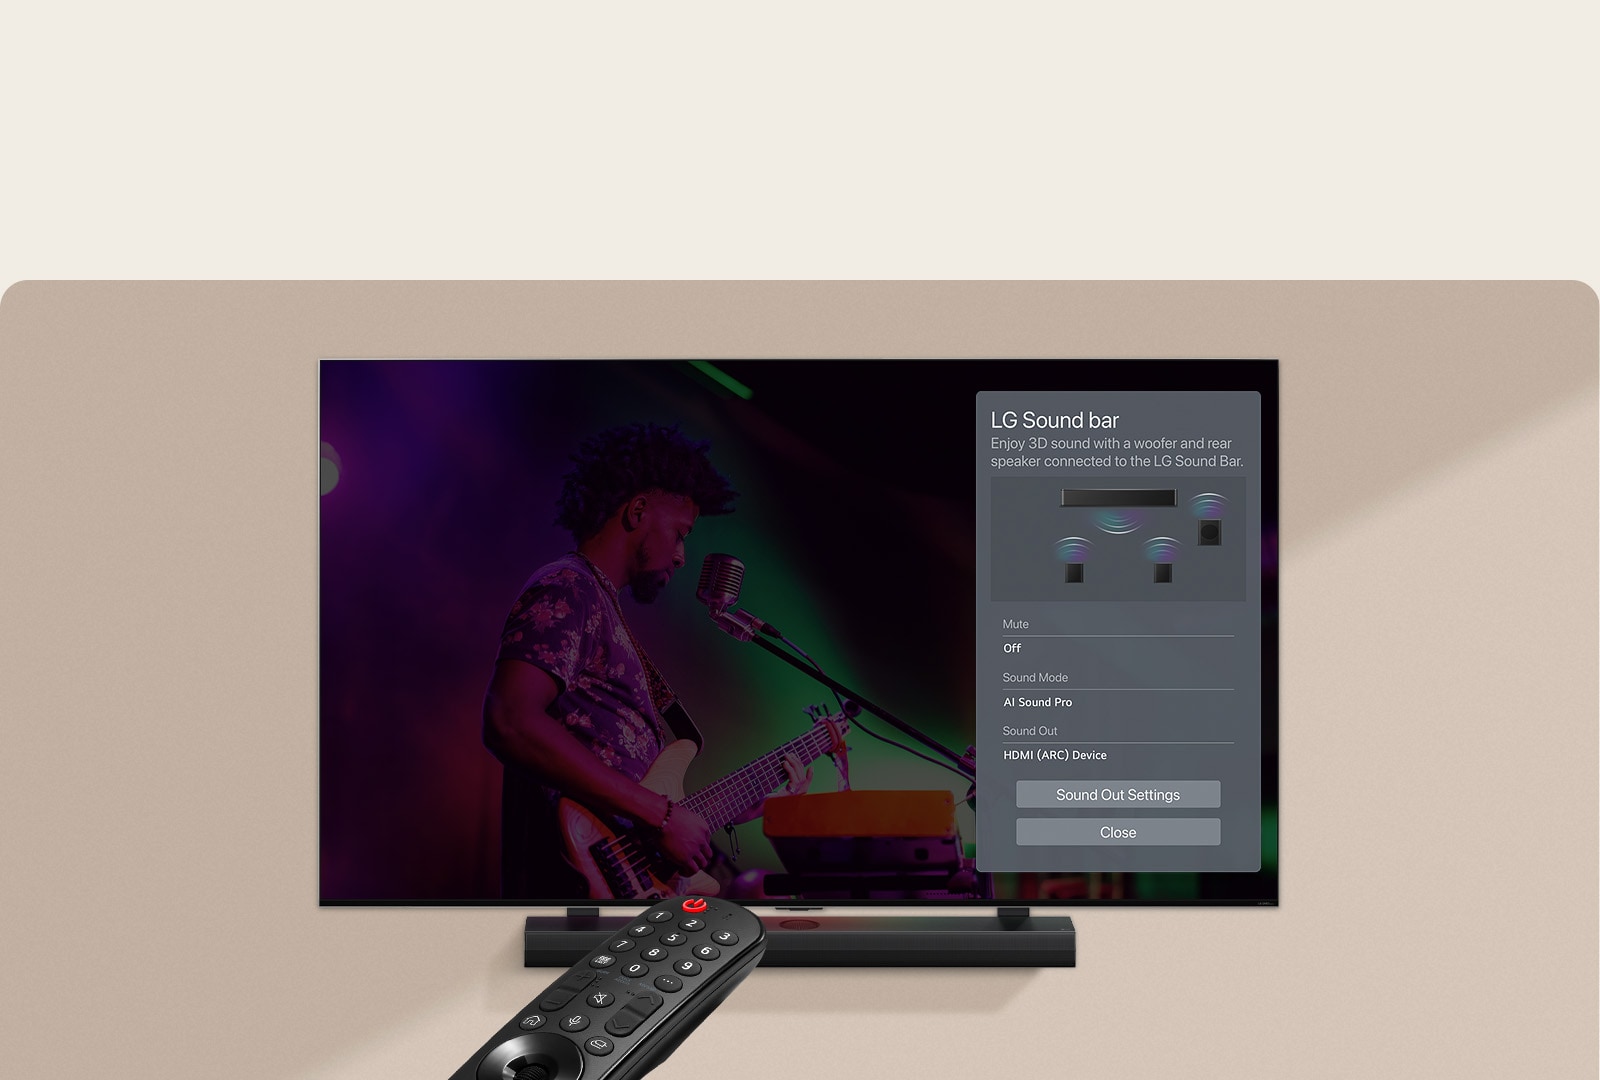 Eine auf einen LG-Fernseher gerichtete Fernbedienung zeigt die Einstellungen auf der rechten Seite des Bildschirms an.